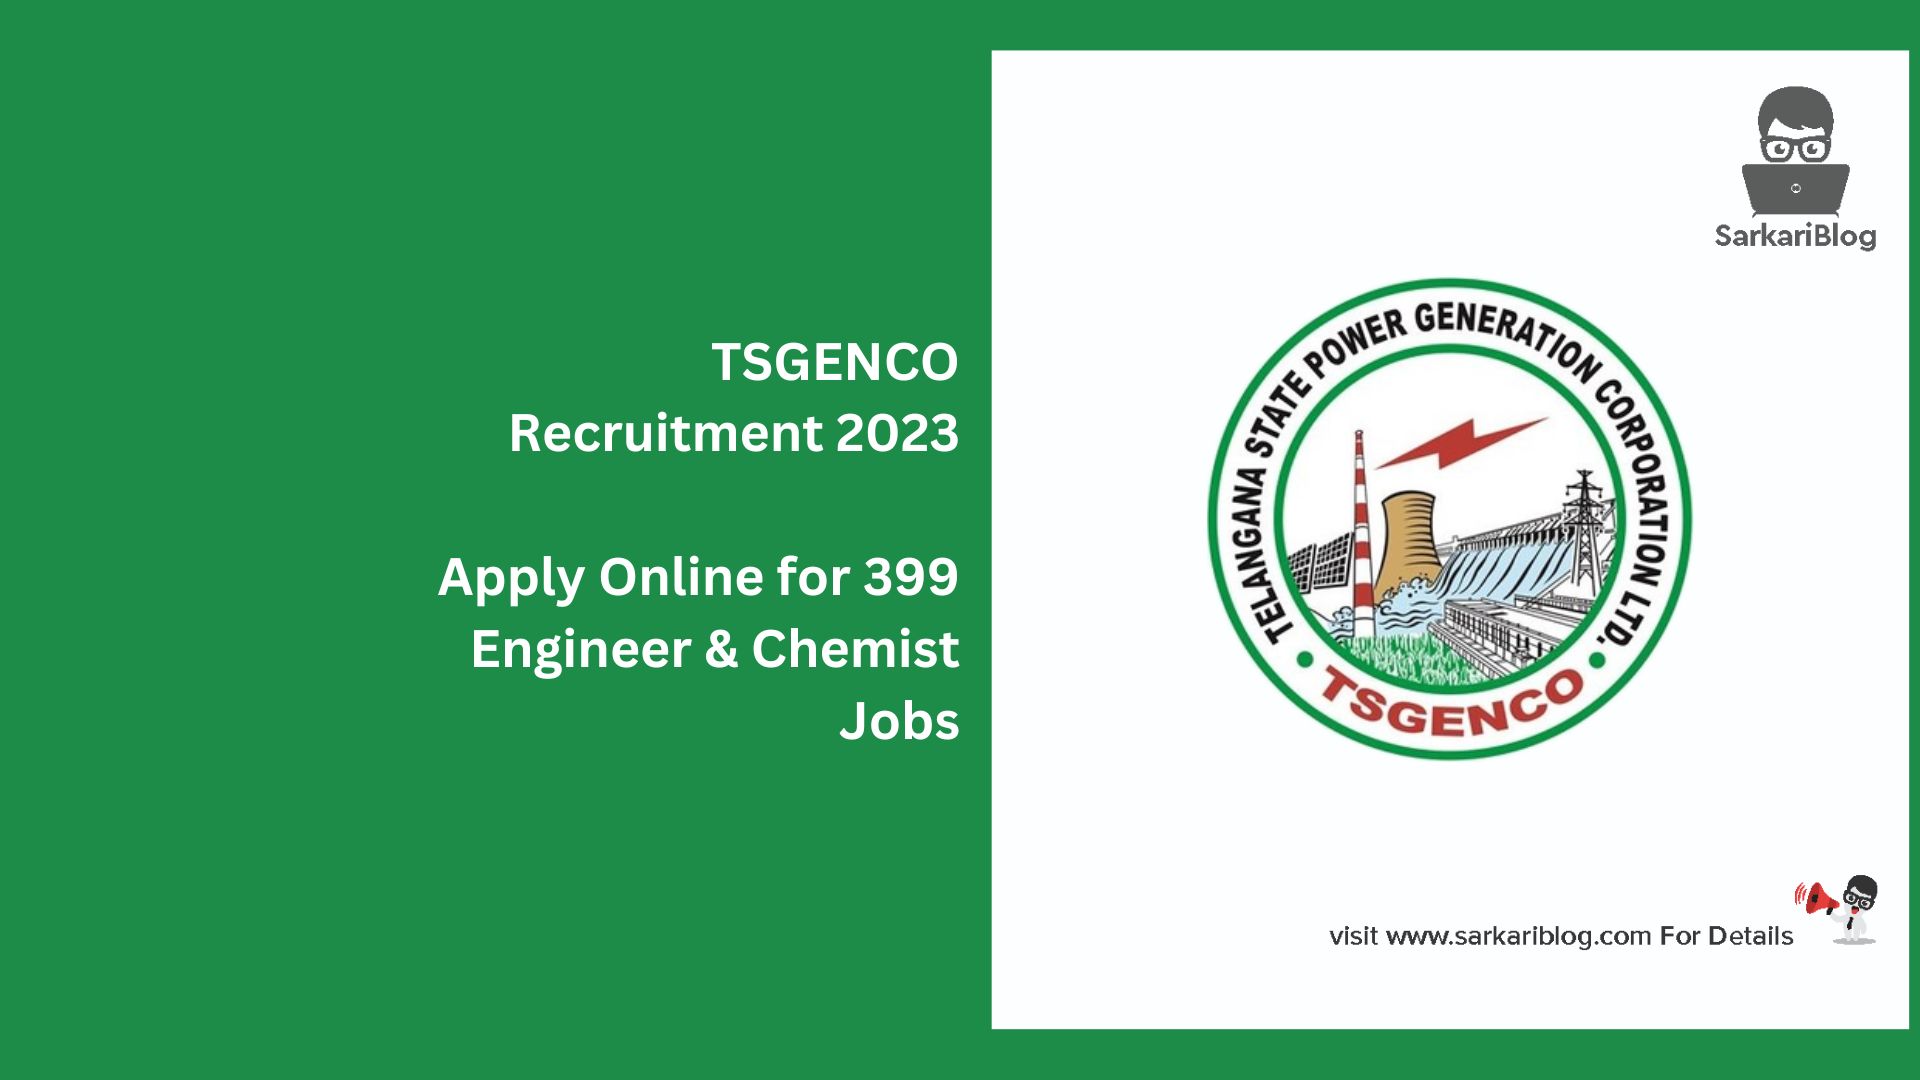 TSGENCO Recruitment 2023